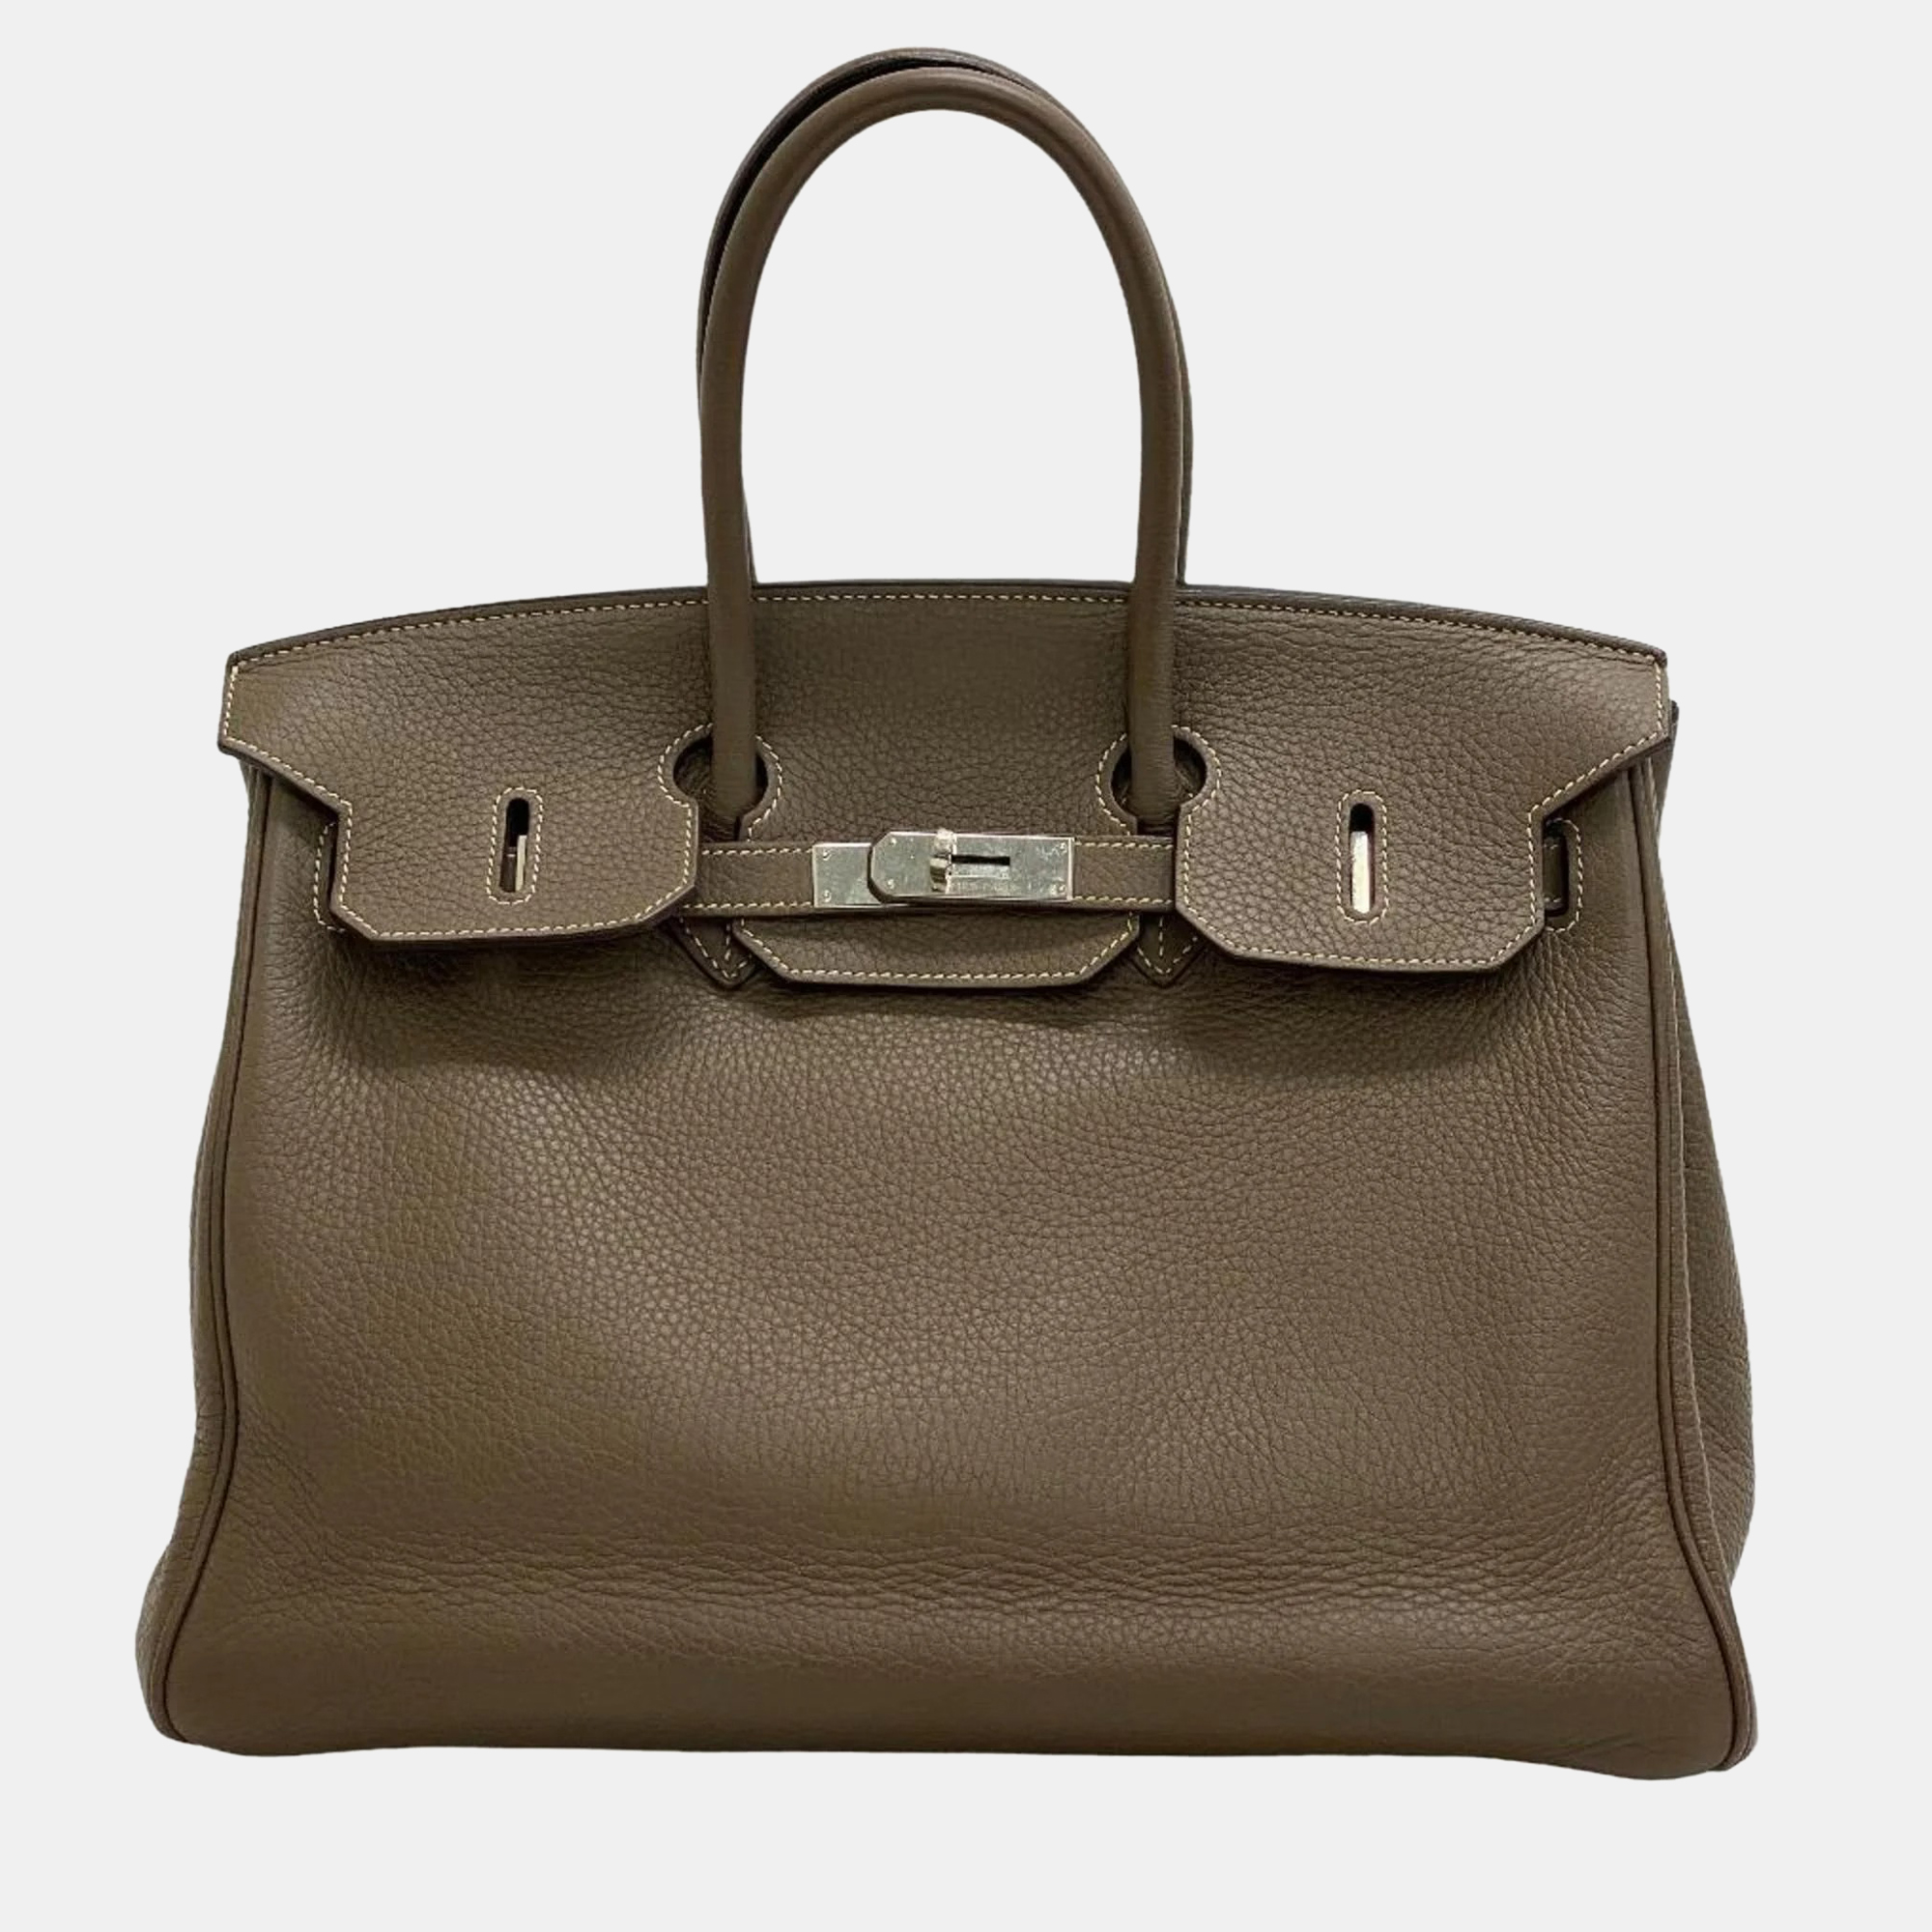 Hermes birkin 35 etoupe handbag gray ladies